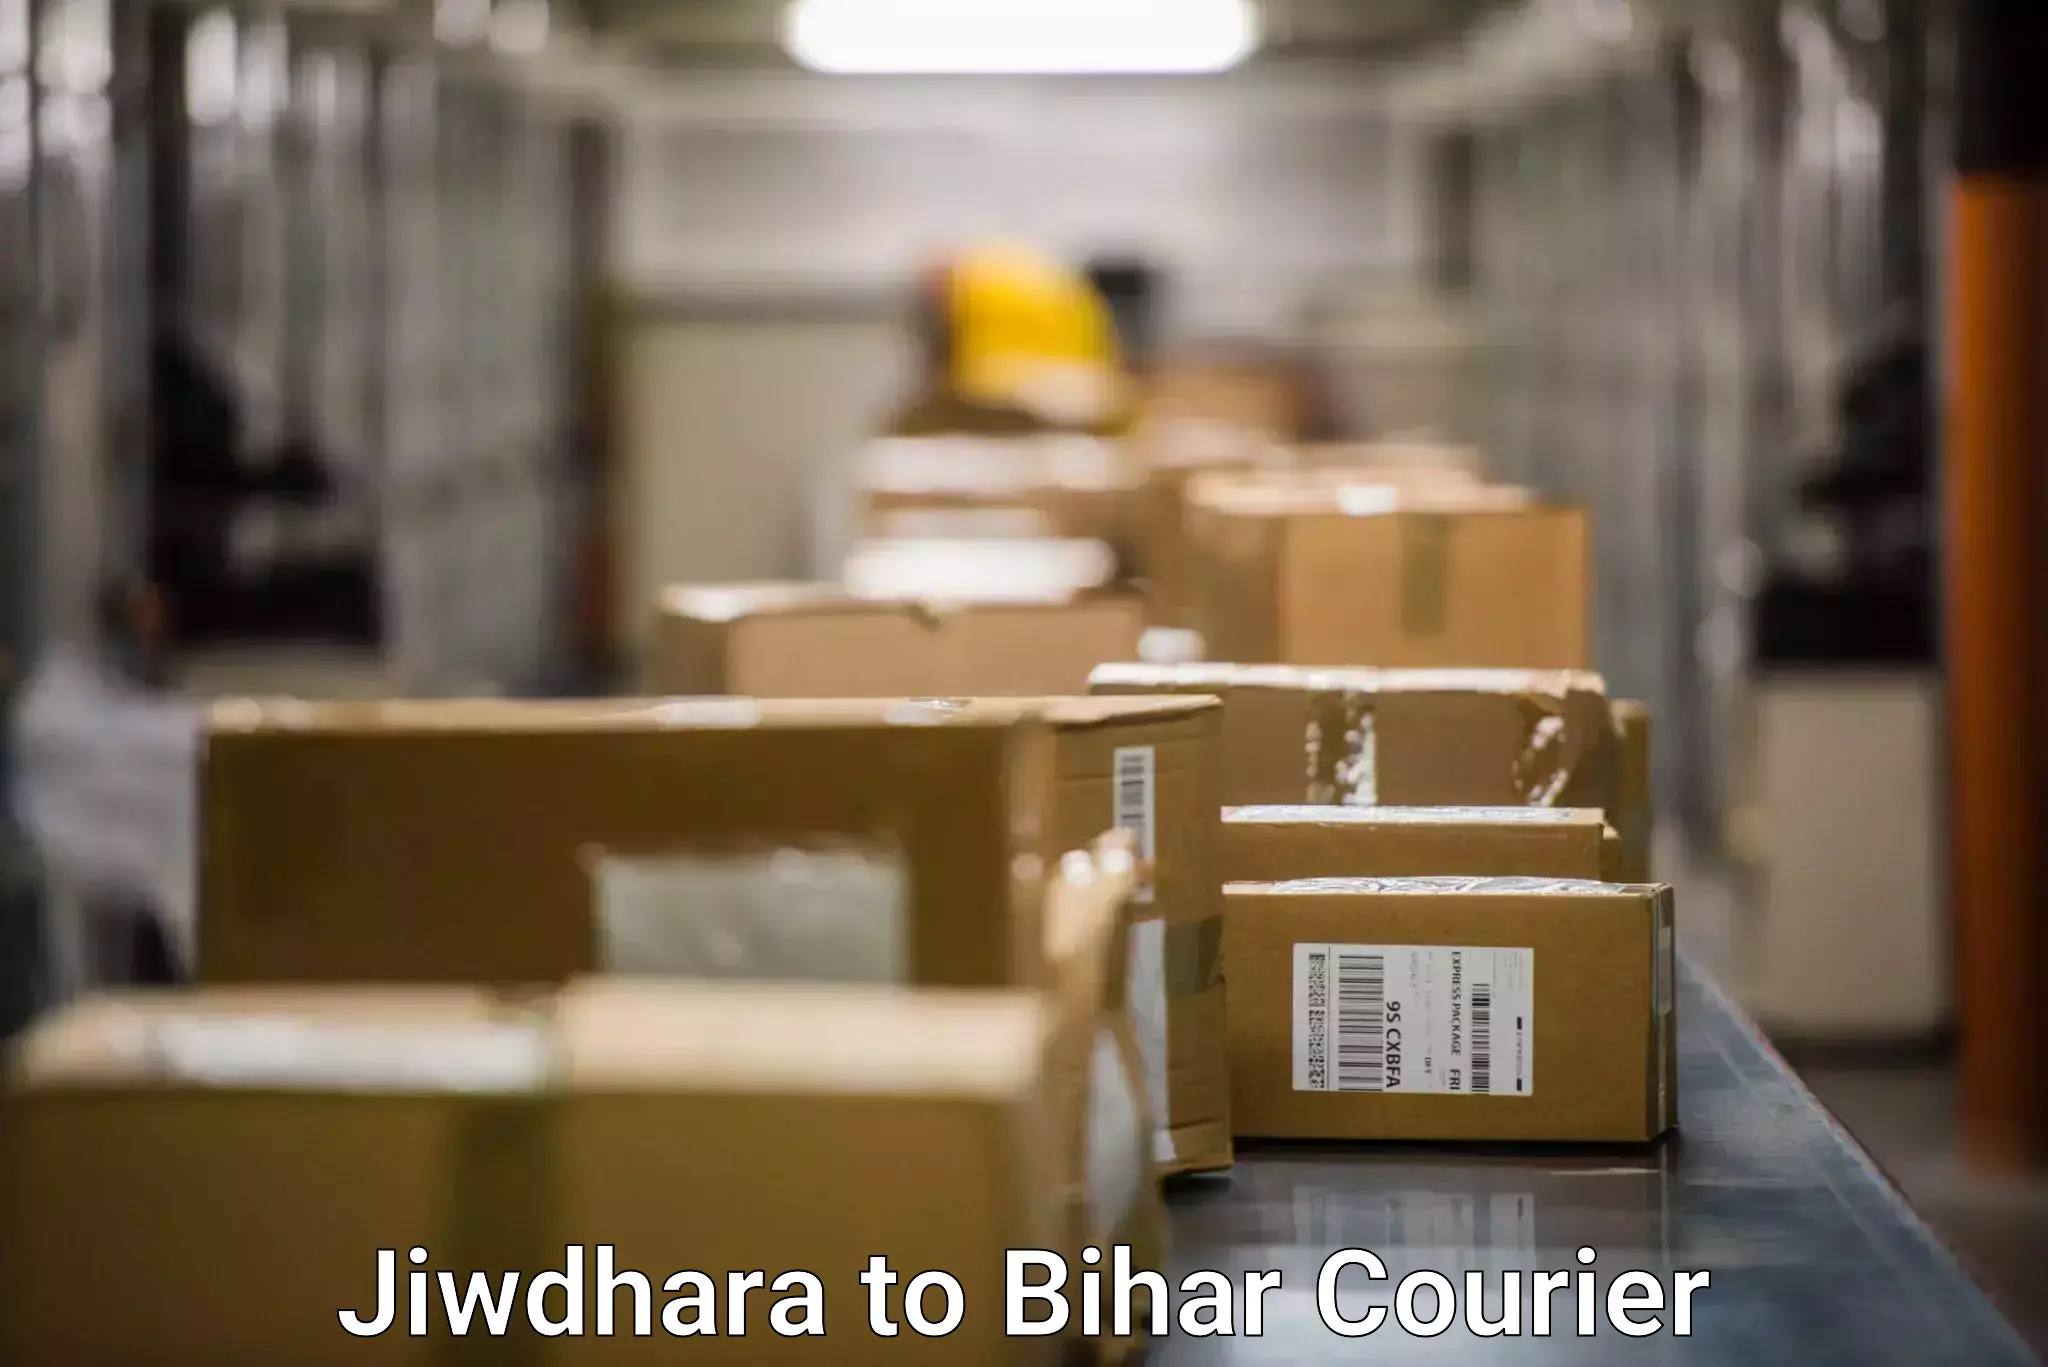 Speedy delivery service Jiwdhara to Murliganj